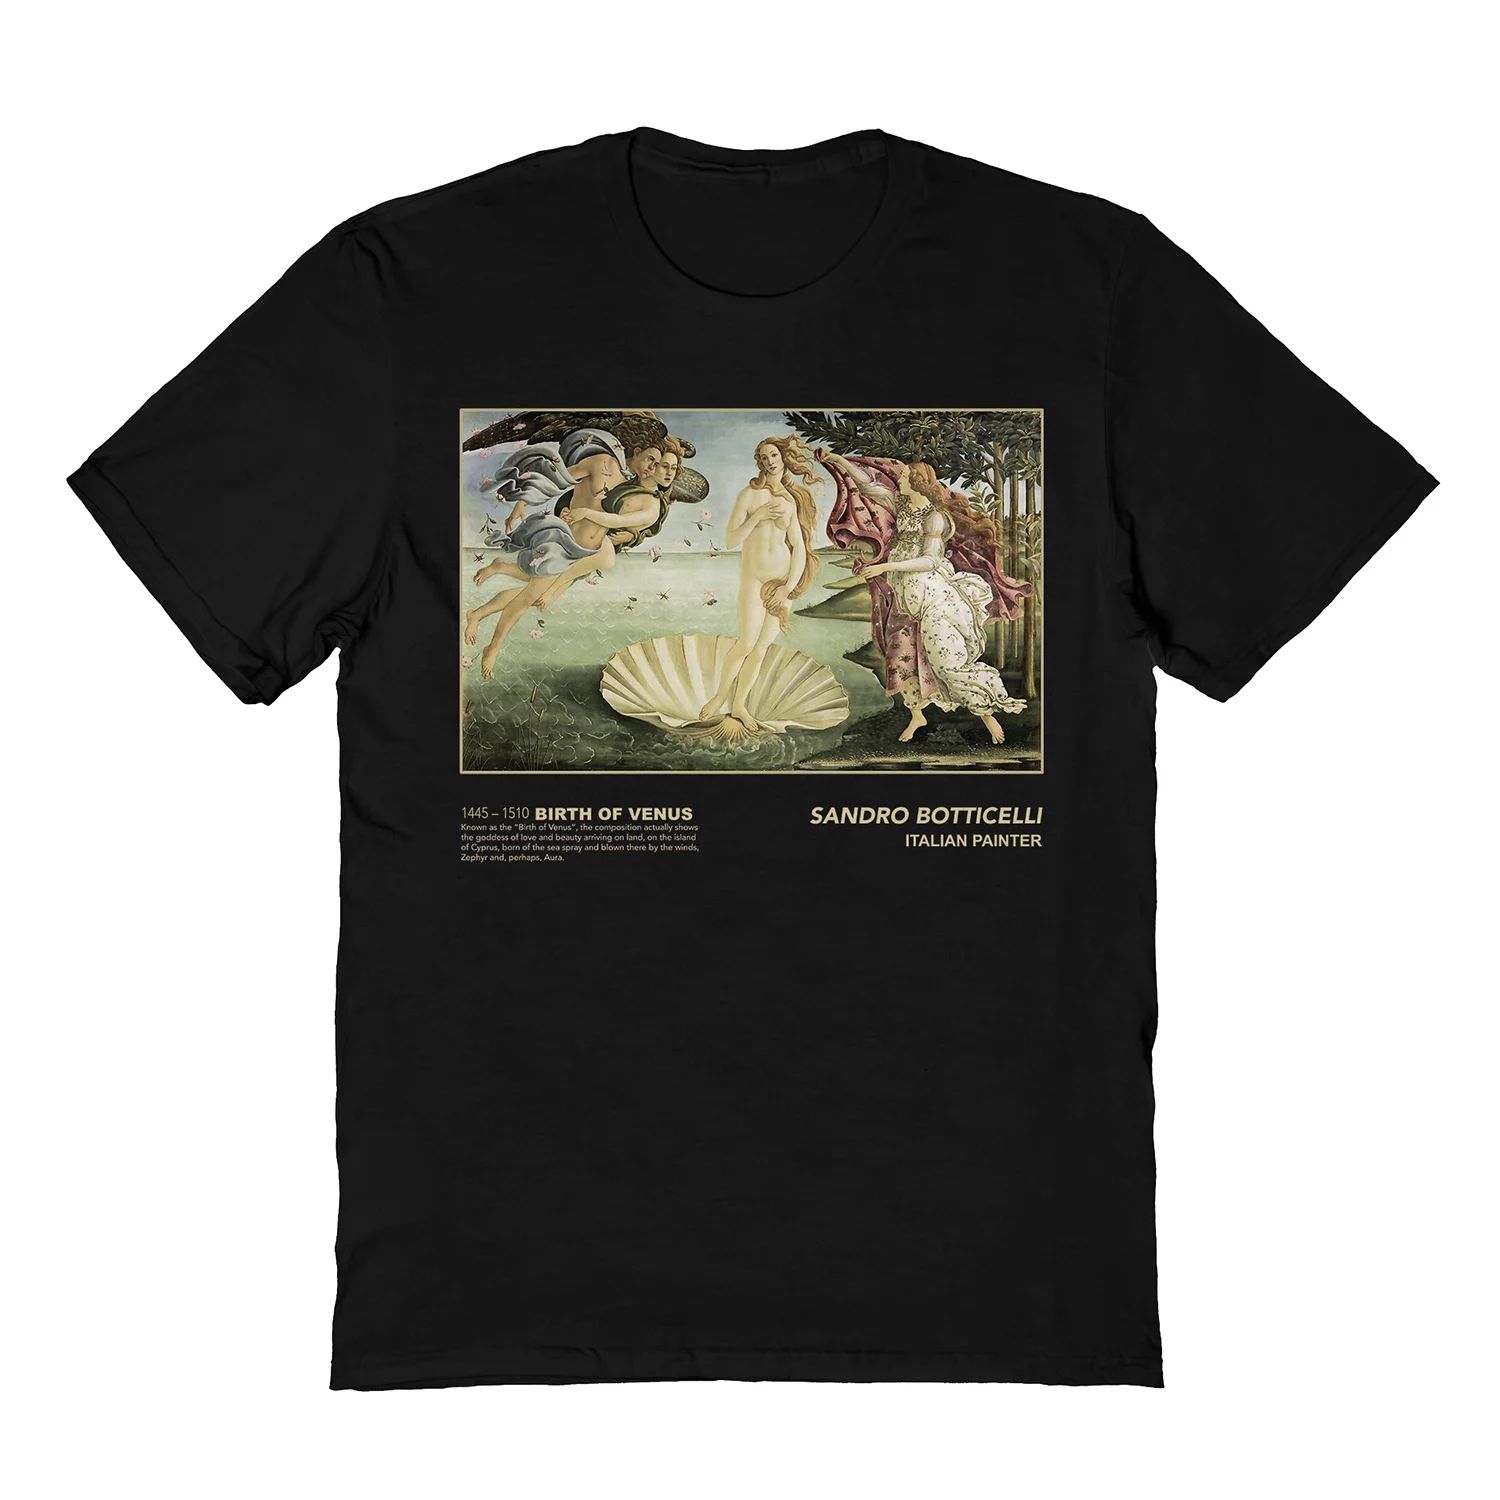 Мужская футболка Sandro Botticelli рождение Венеры черная Licensed Character